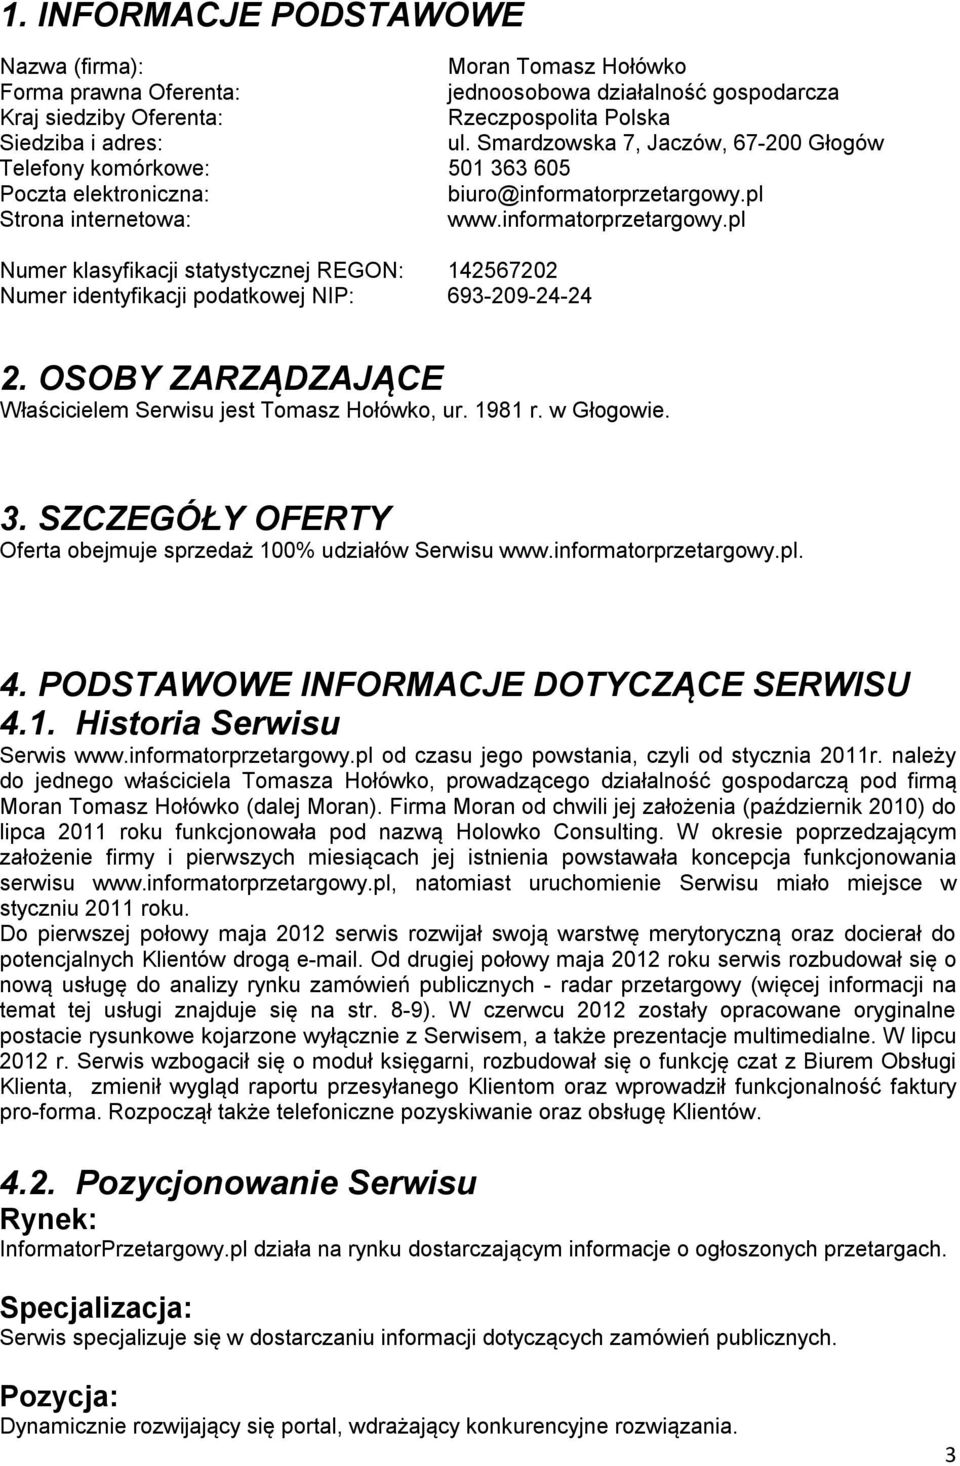 pl Strona internetowa: www.informatorprzetargowy.pl Numer klasyfikacji statystycznej REGON: 142567202 Numer identyfikacji podatkowej NIP: 693-209-24-24 2.